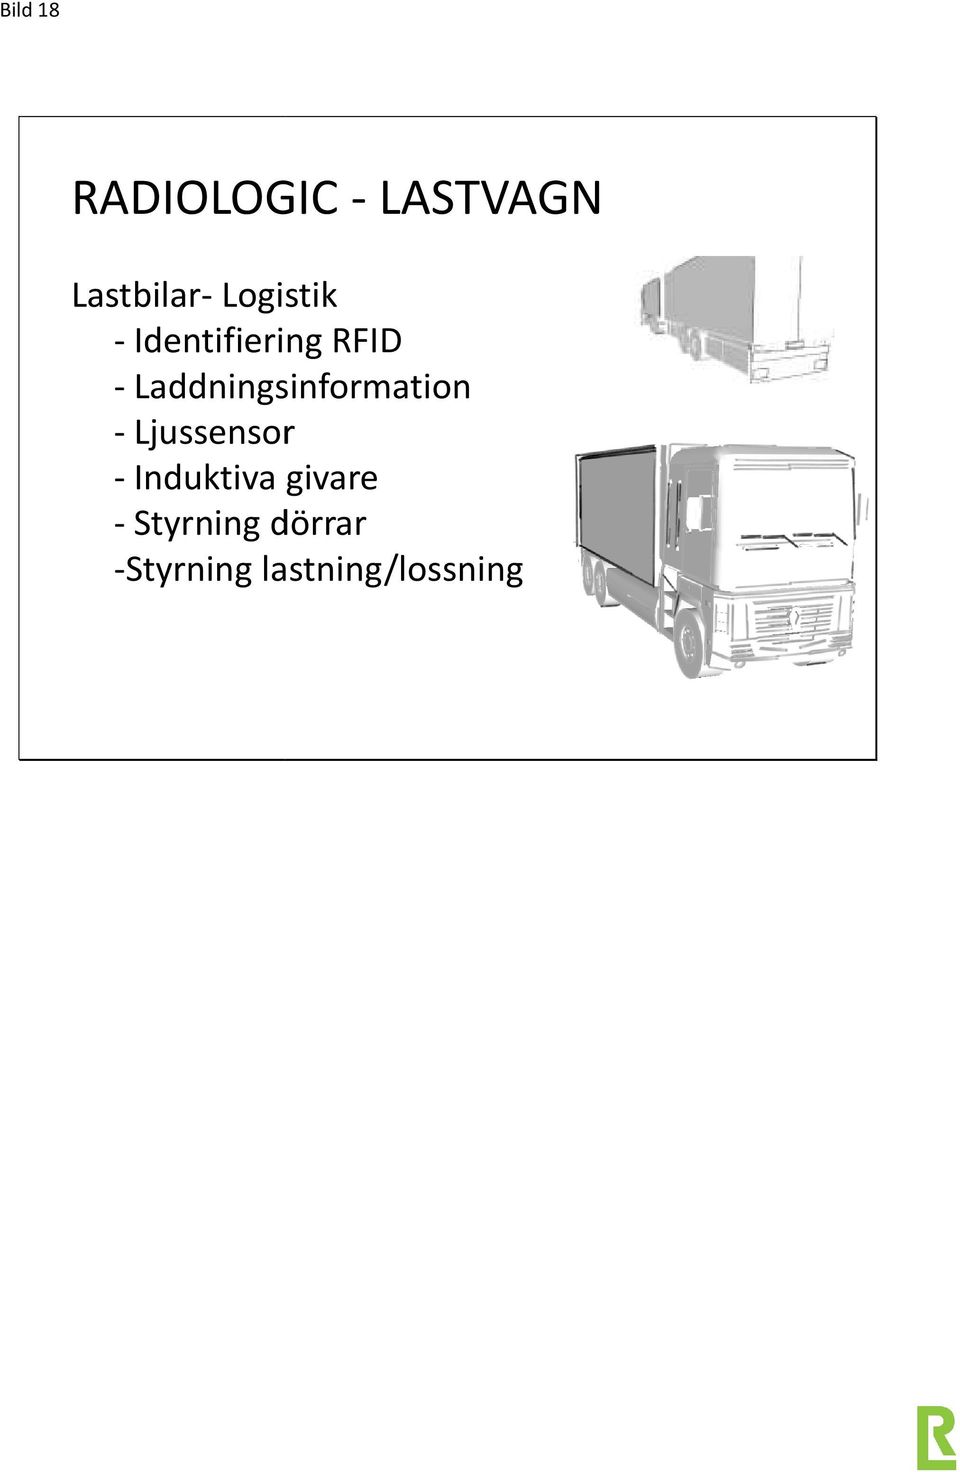 Laddningsinformation - Ljussensor